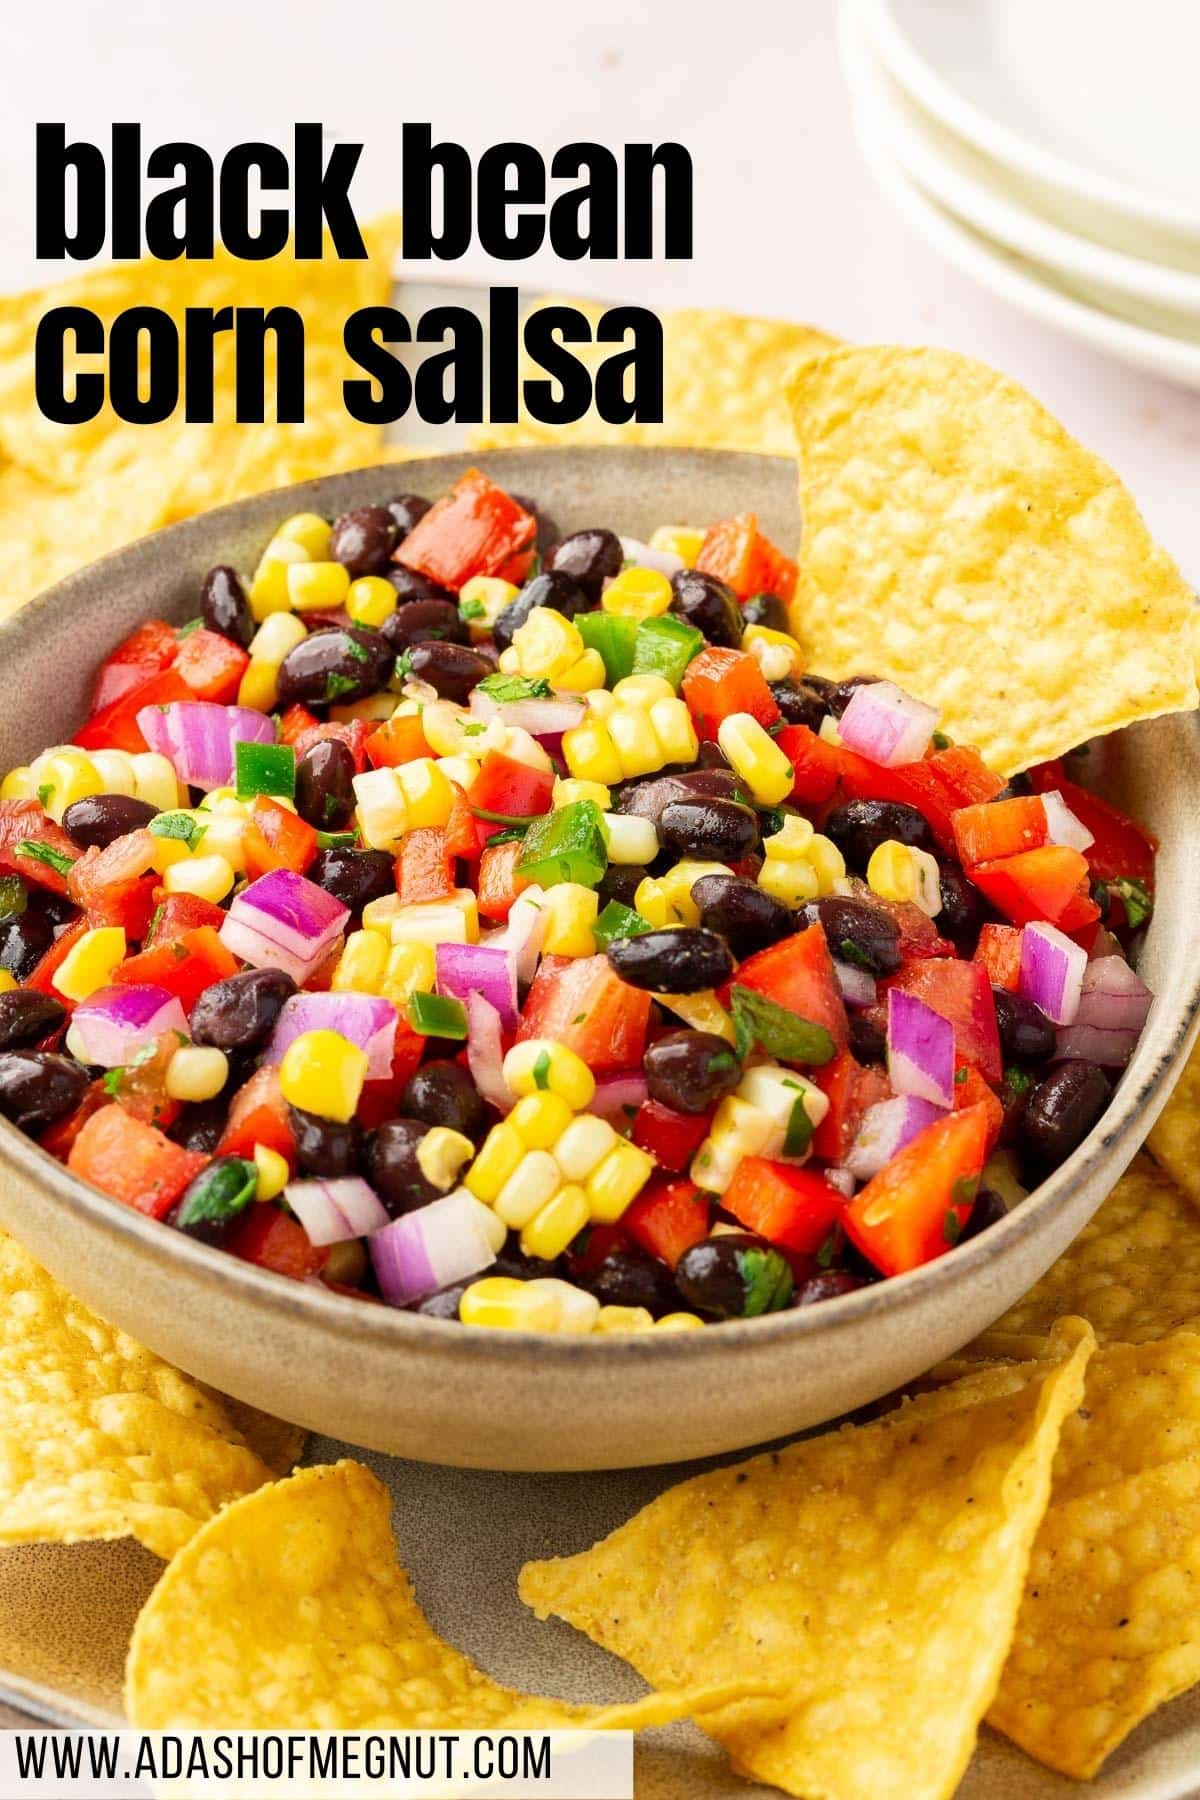 A bowl of black bean corn salsa on a platter of tortilla chips.